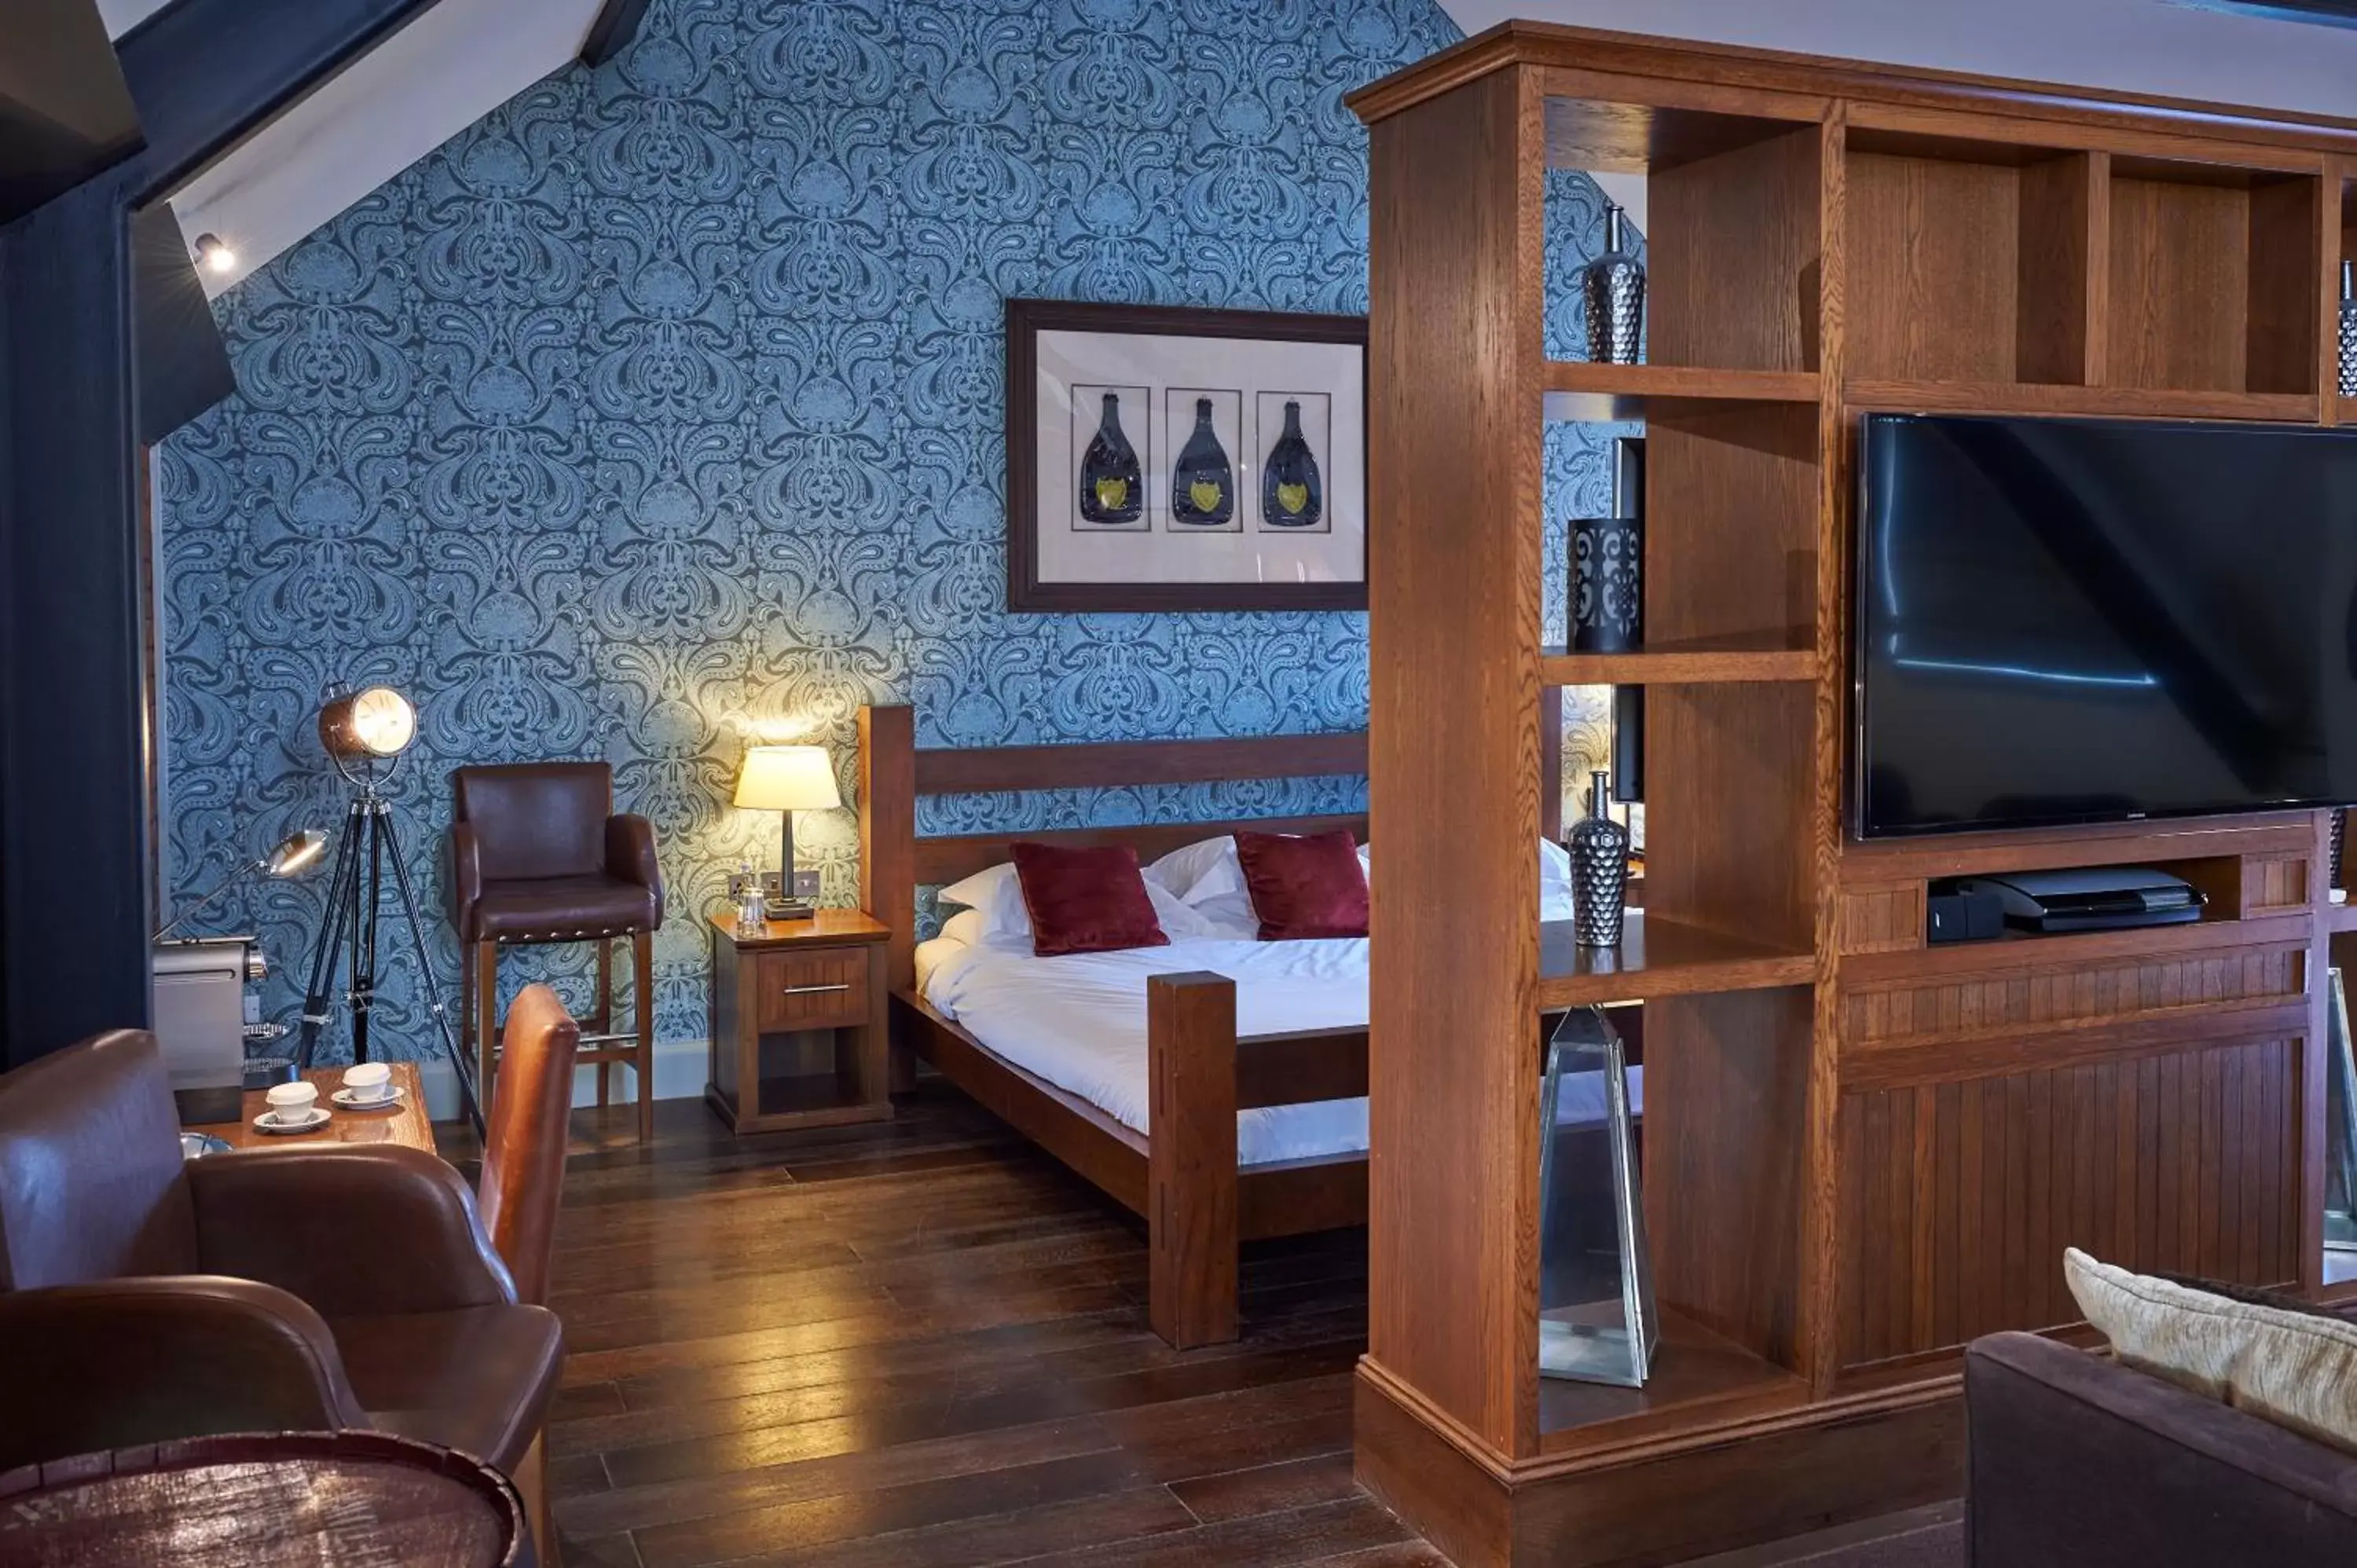 Bed in Hotel Du Vin Newcastle